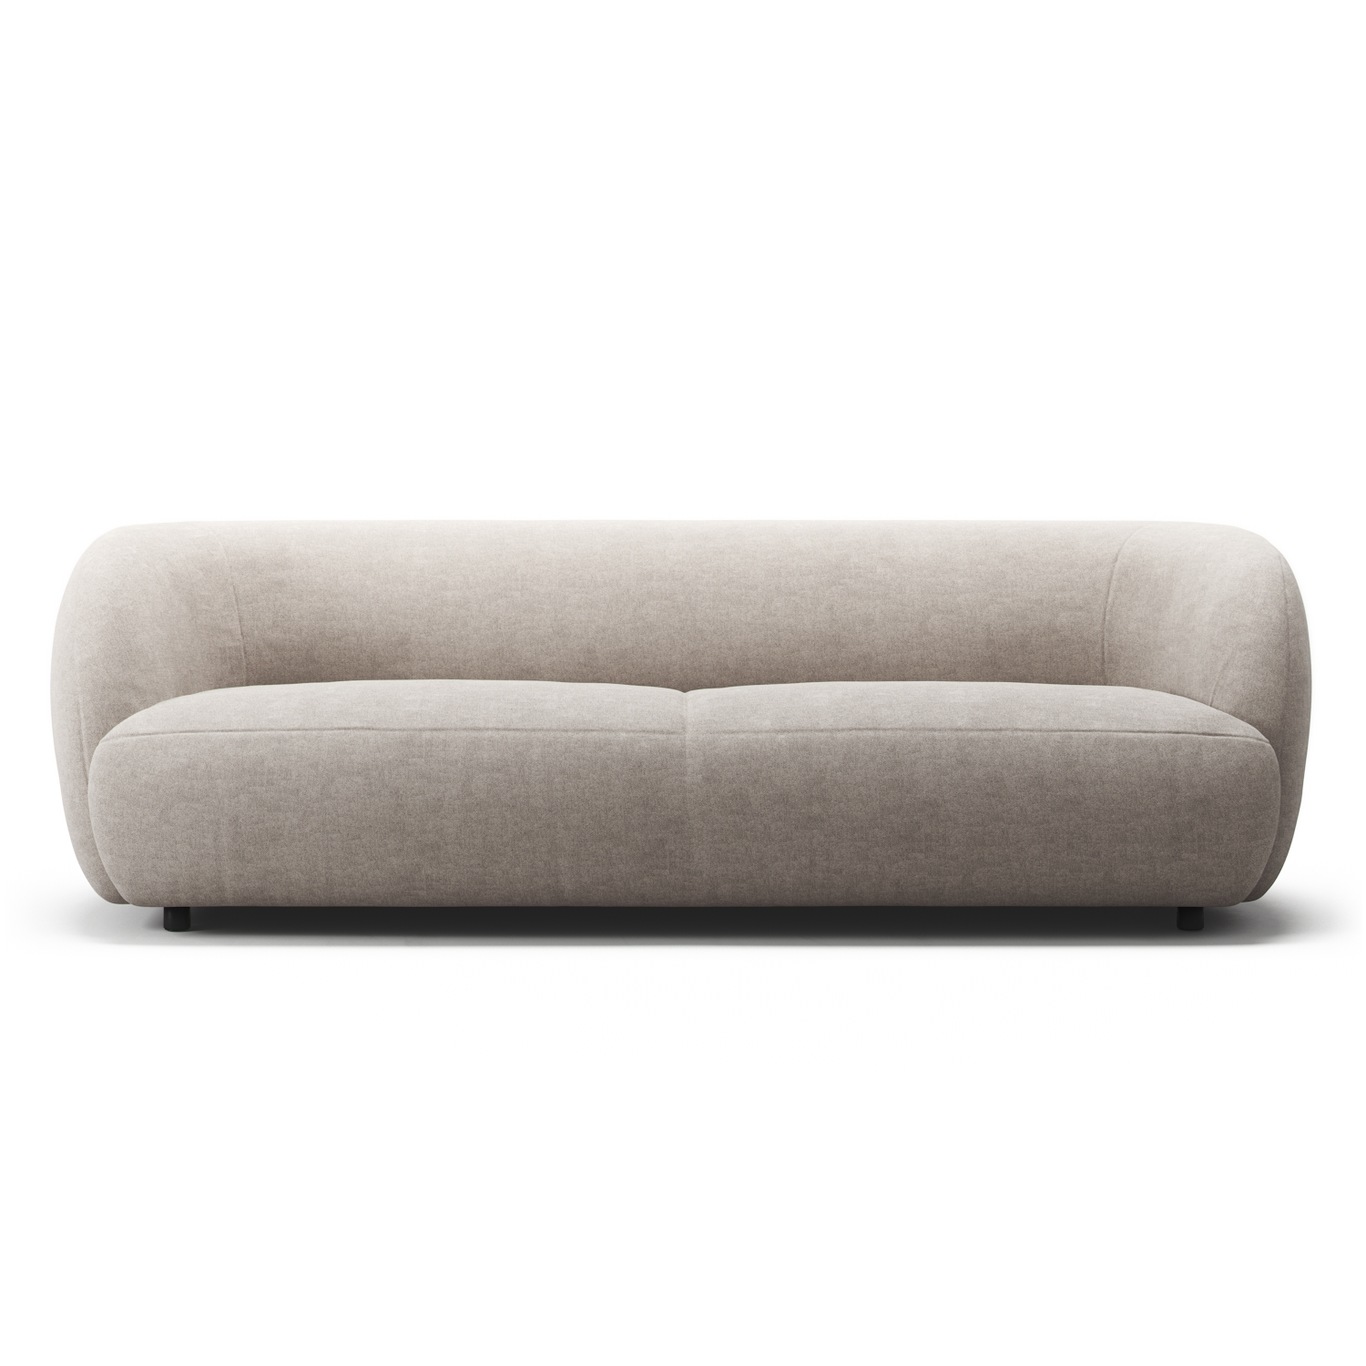 Atelier Sofa 3-Seater, Sandshell Beige